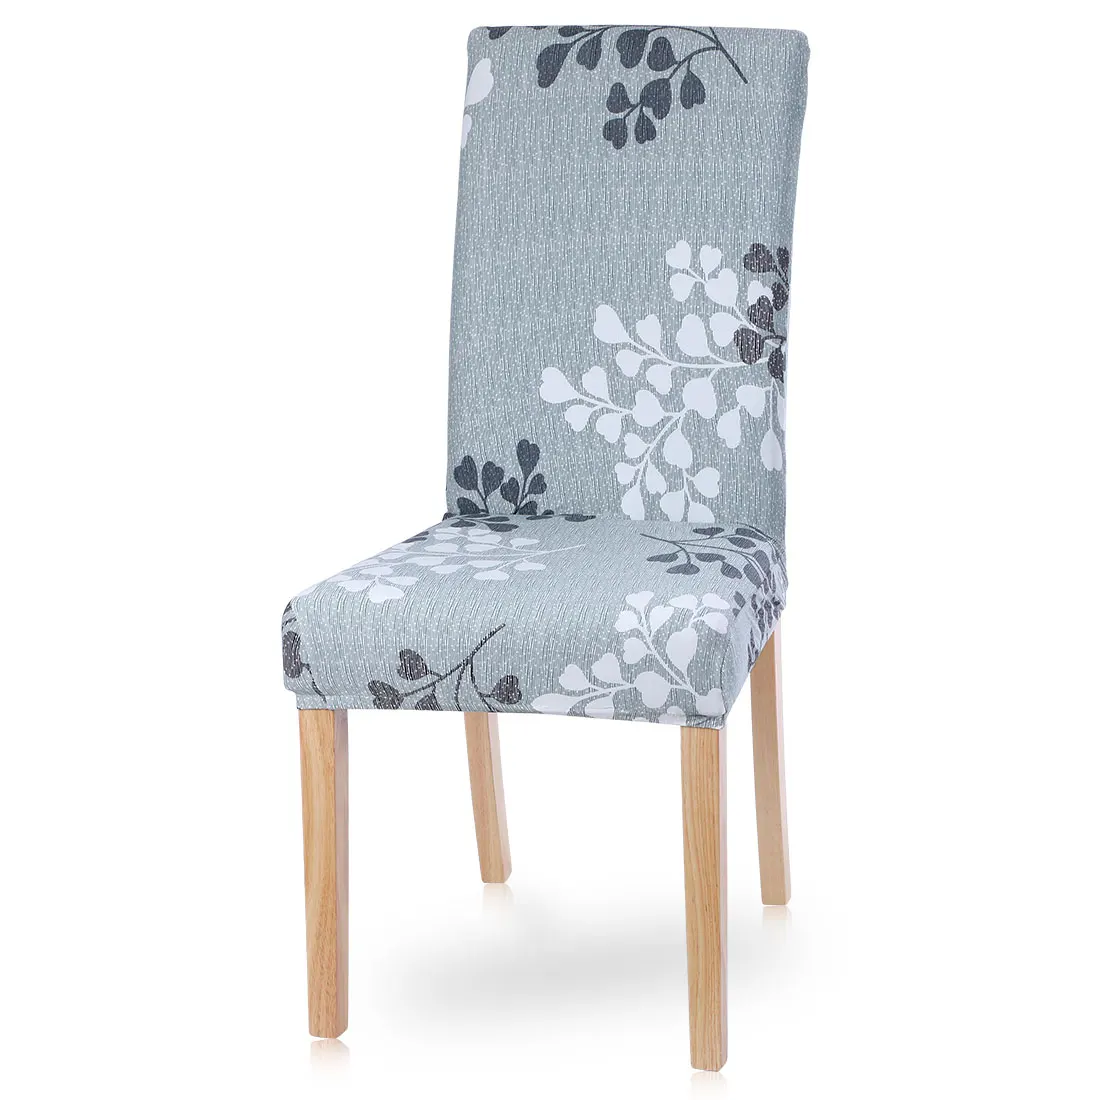 Urijk цветочный принт стрейч эластичный чехол для кресла спандекс для свадьбы, столовой, офиса, банкета, стула - Цвет: P